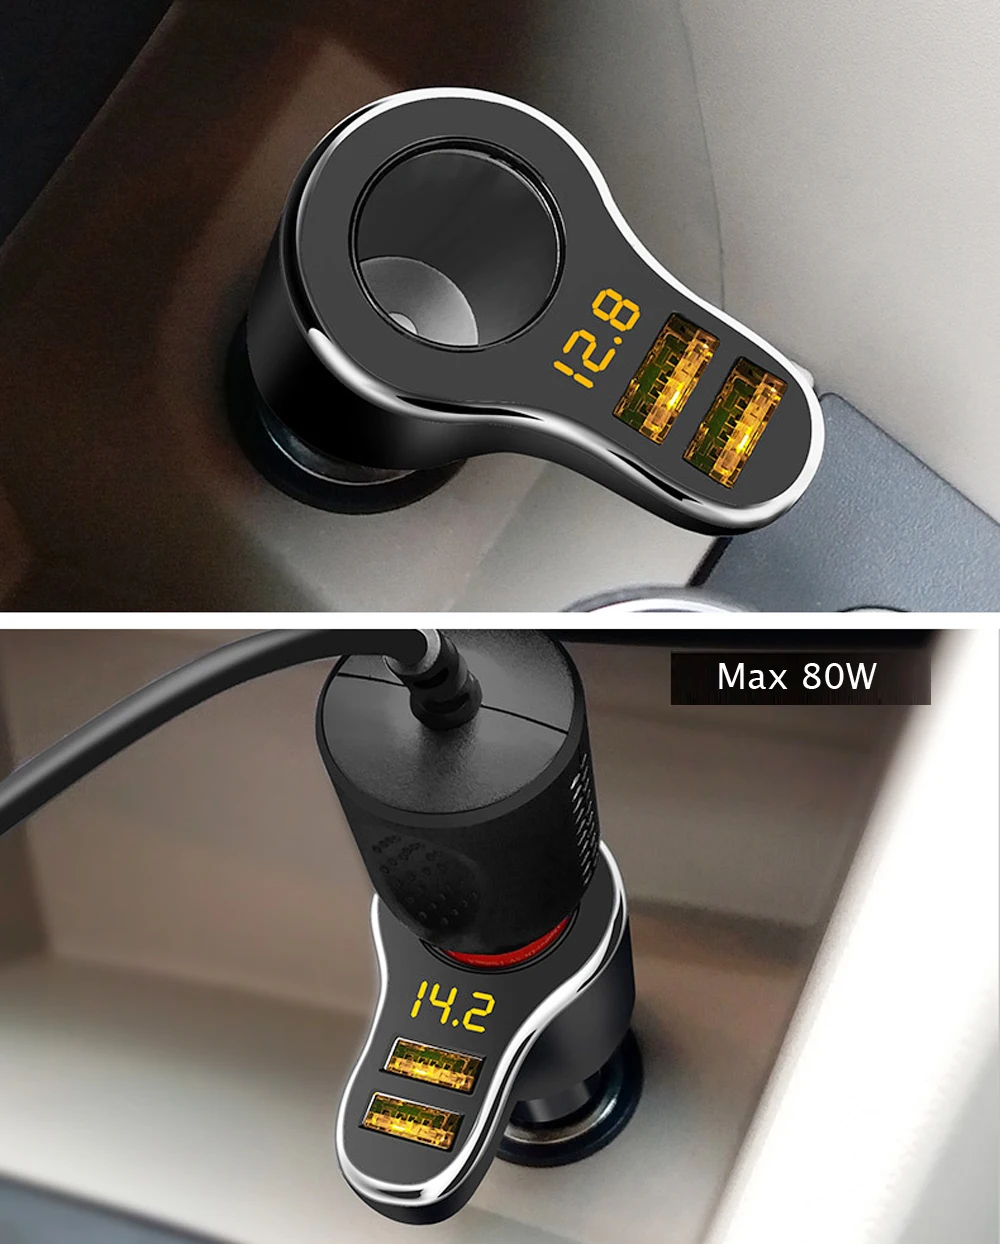 Сигаретный светильник er розетка автомобильное зарядное устройство 3.1A напряжение дисплей 12-24 В светодиодный индикатор светильник адаптер зарядного устройства с двойным USB для телефона MP3 DVR